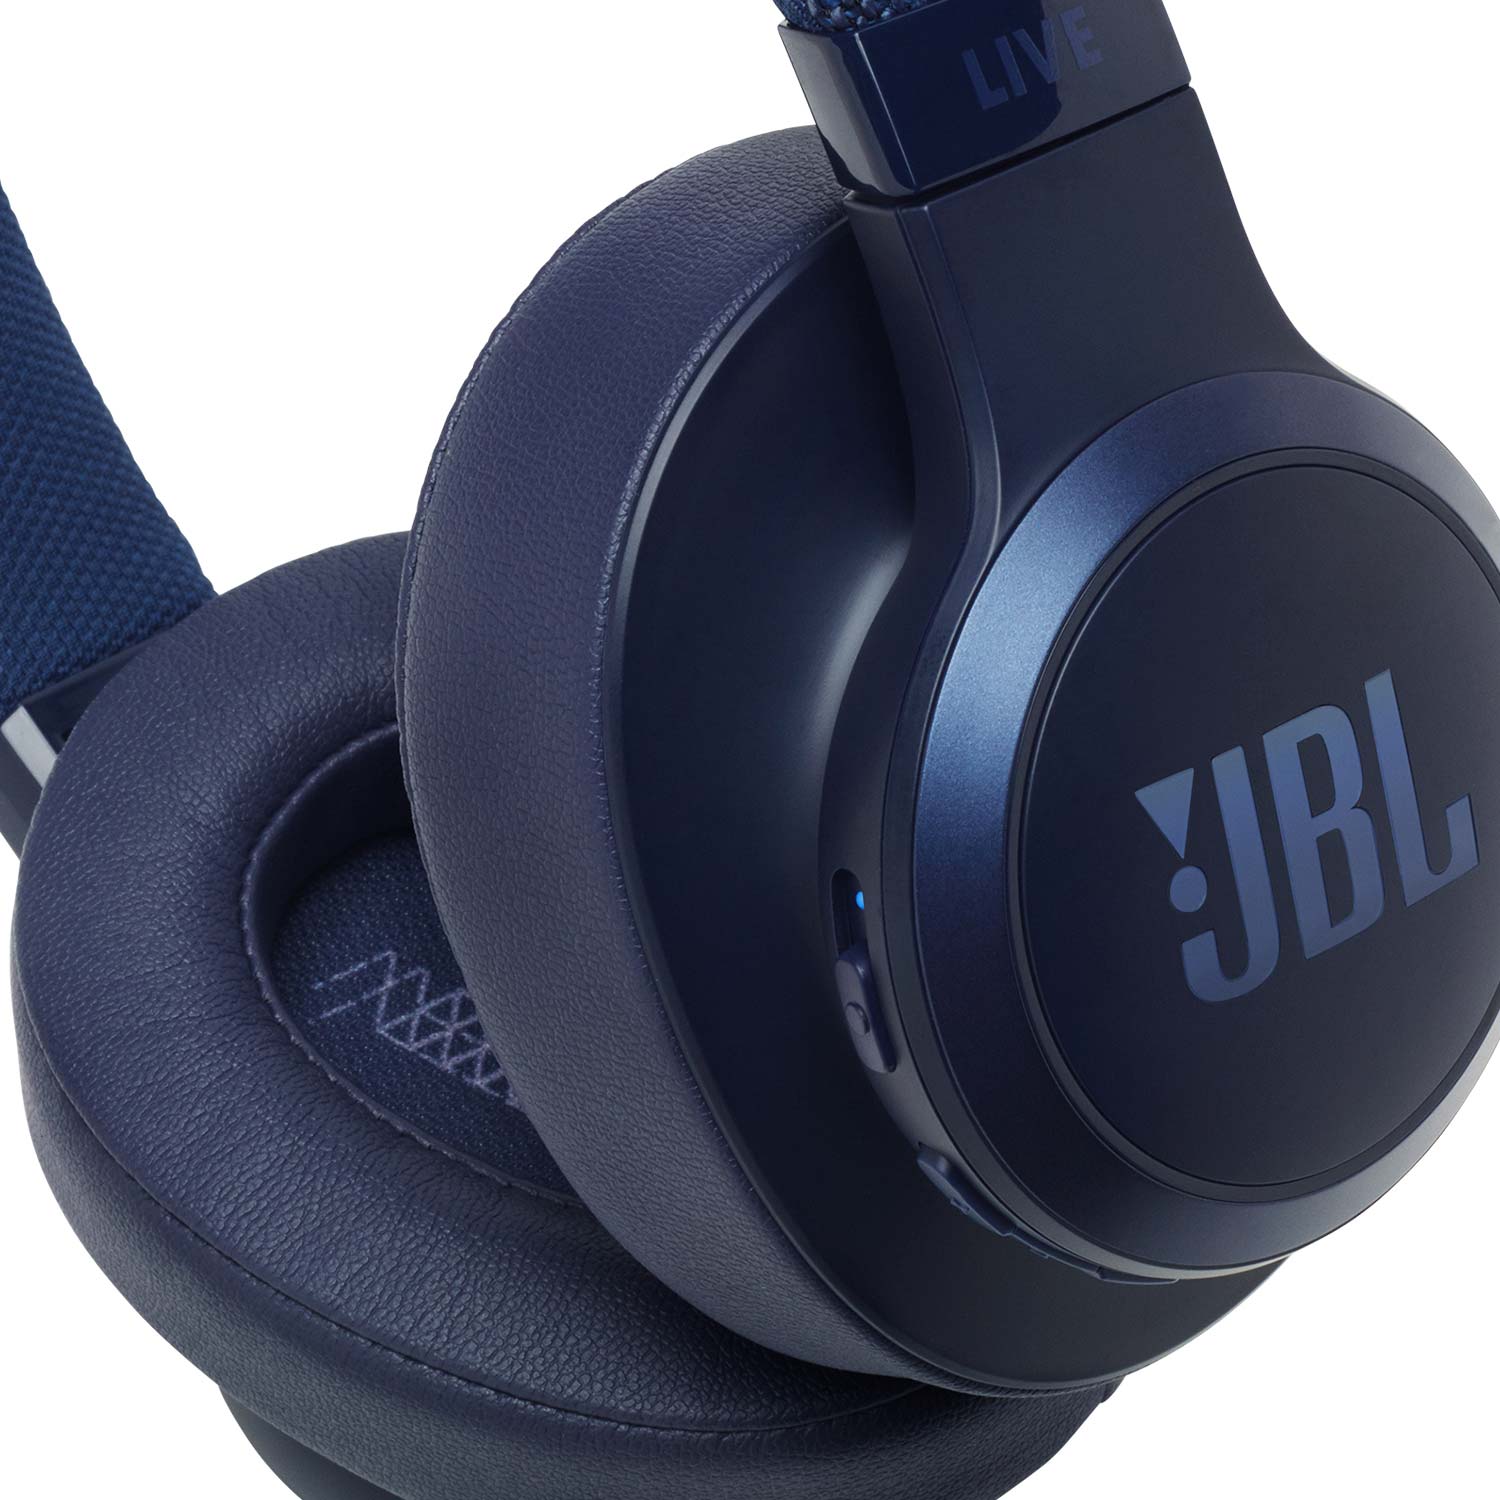 JBL LIVE 500BT Bluetooth Kopfhörer - Blau